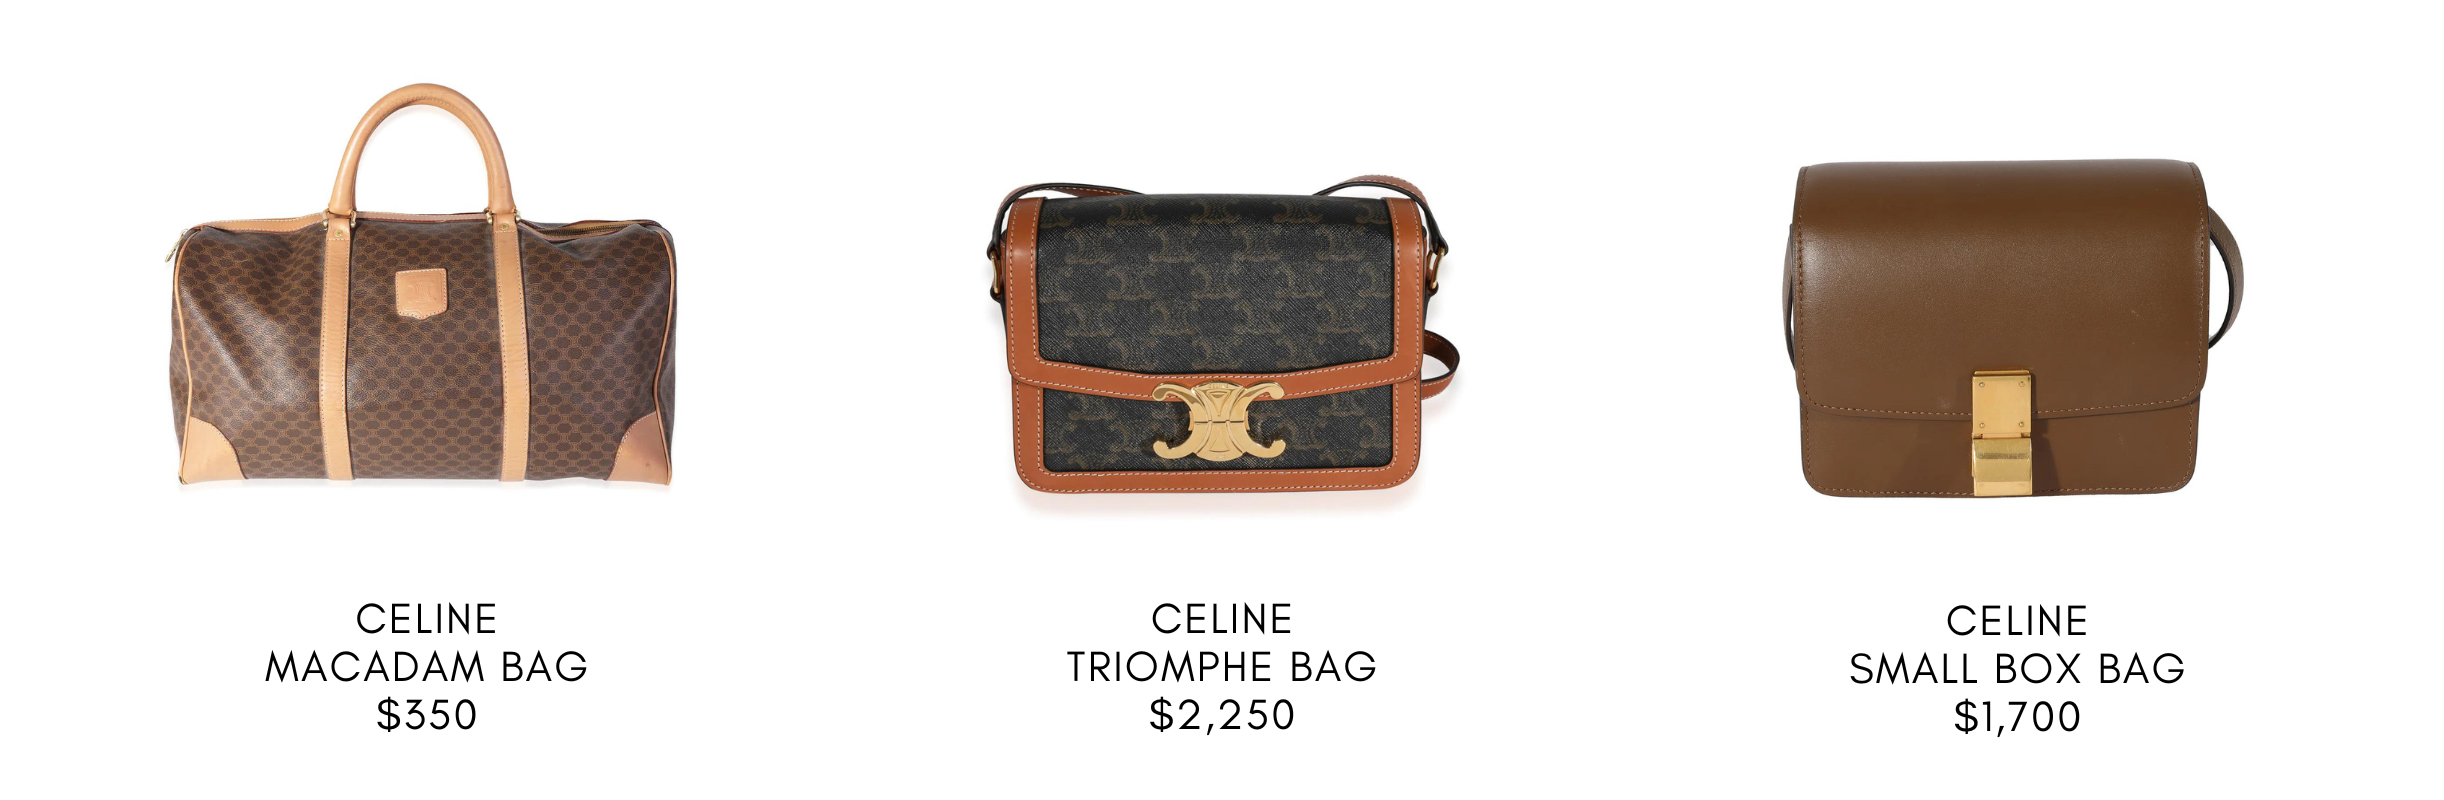 Buy Celine bag